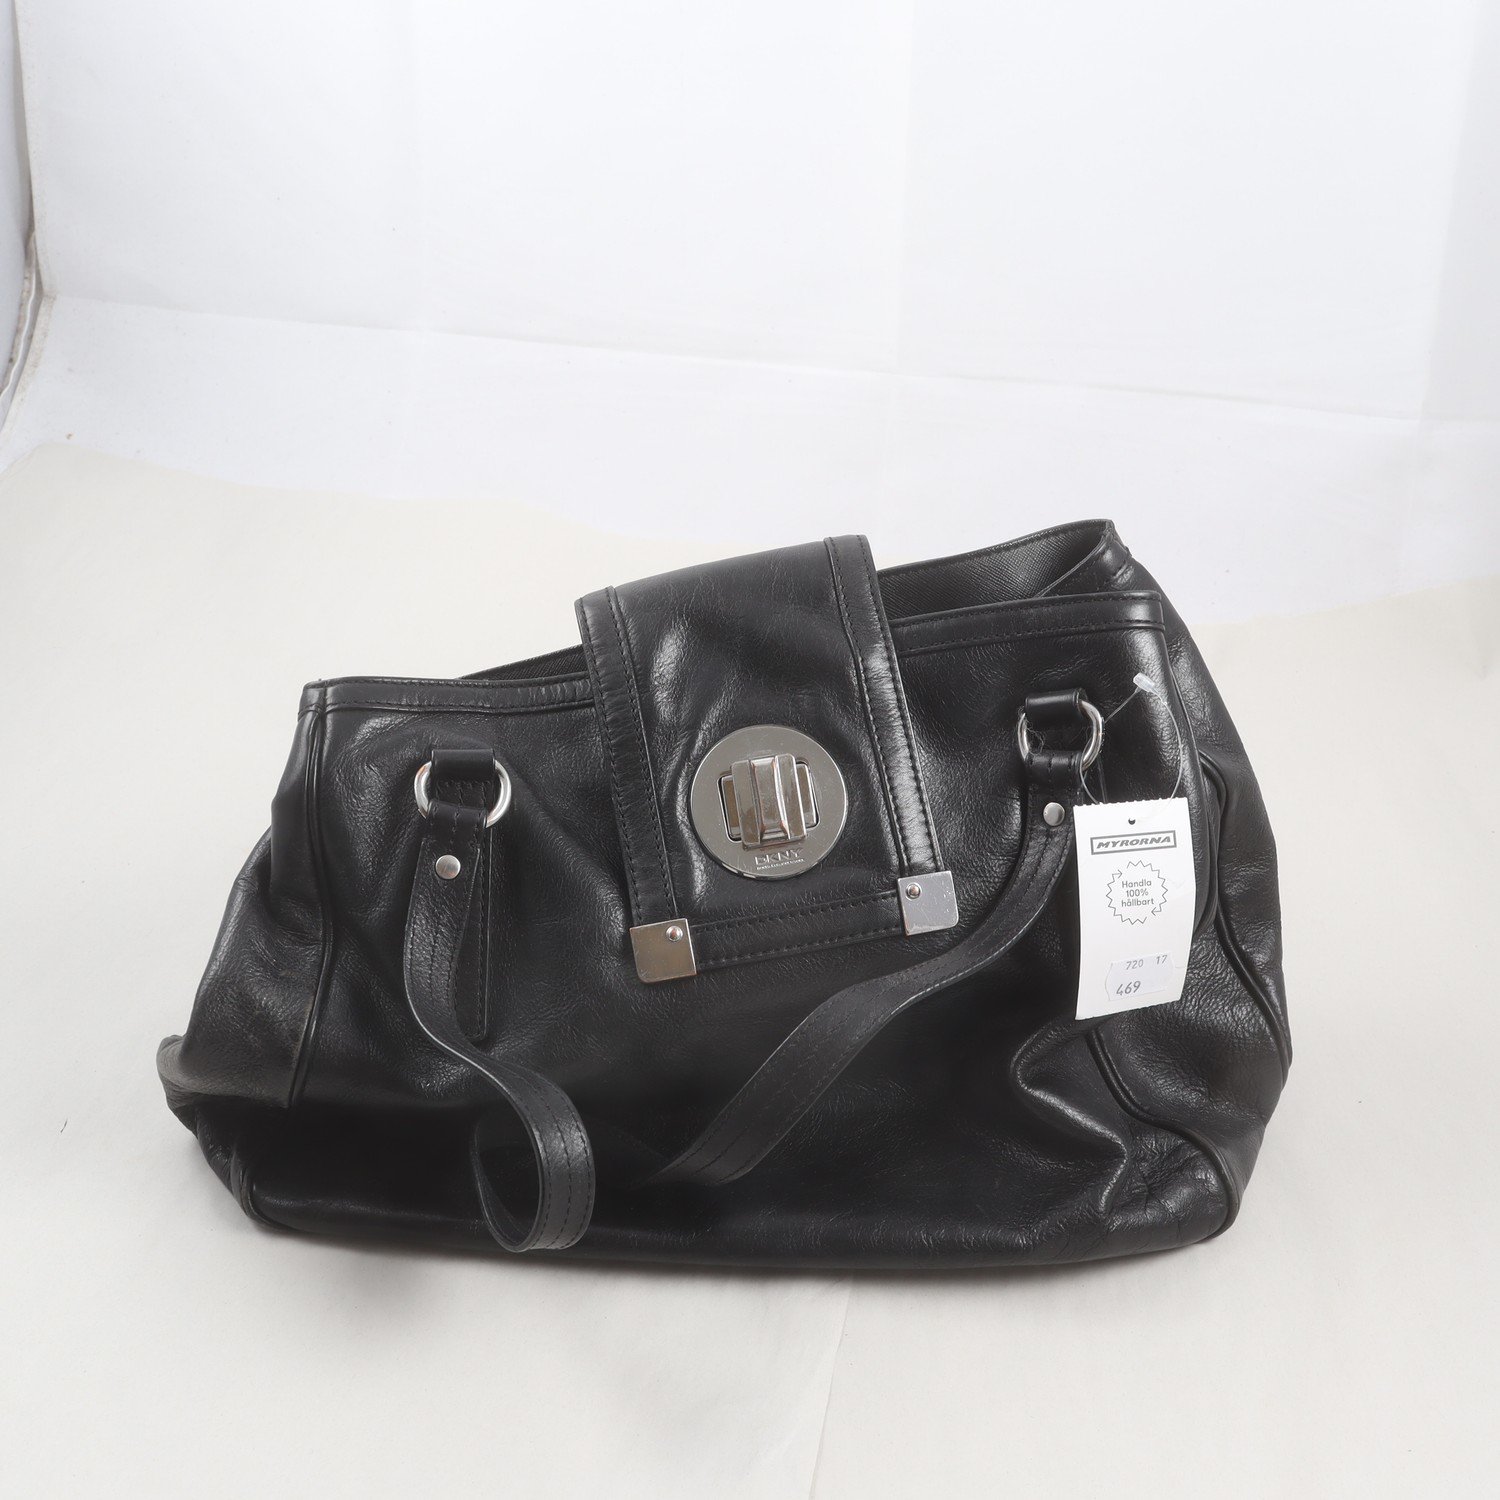 Handväska, DKNY, Donna Karen, New York, svart